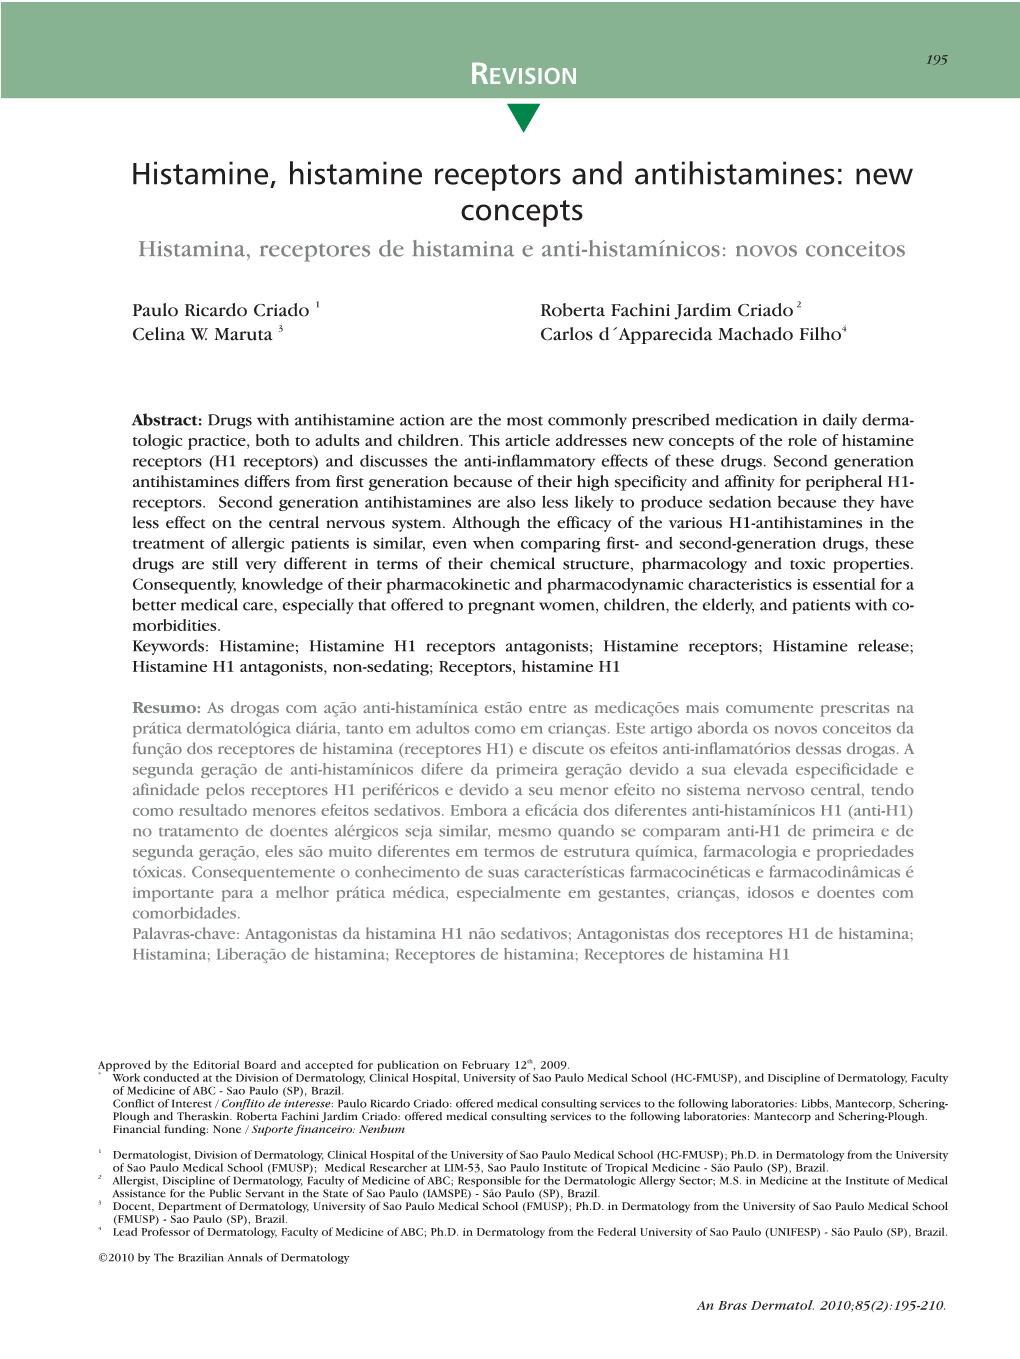 Histamine, Histamine Receptors and Antihistamines: New Concepts Histamina, Receptores De Histamina E Anti-Histamínicos: Novos Conceitos